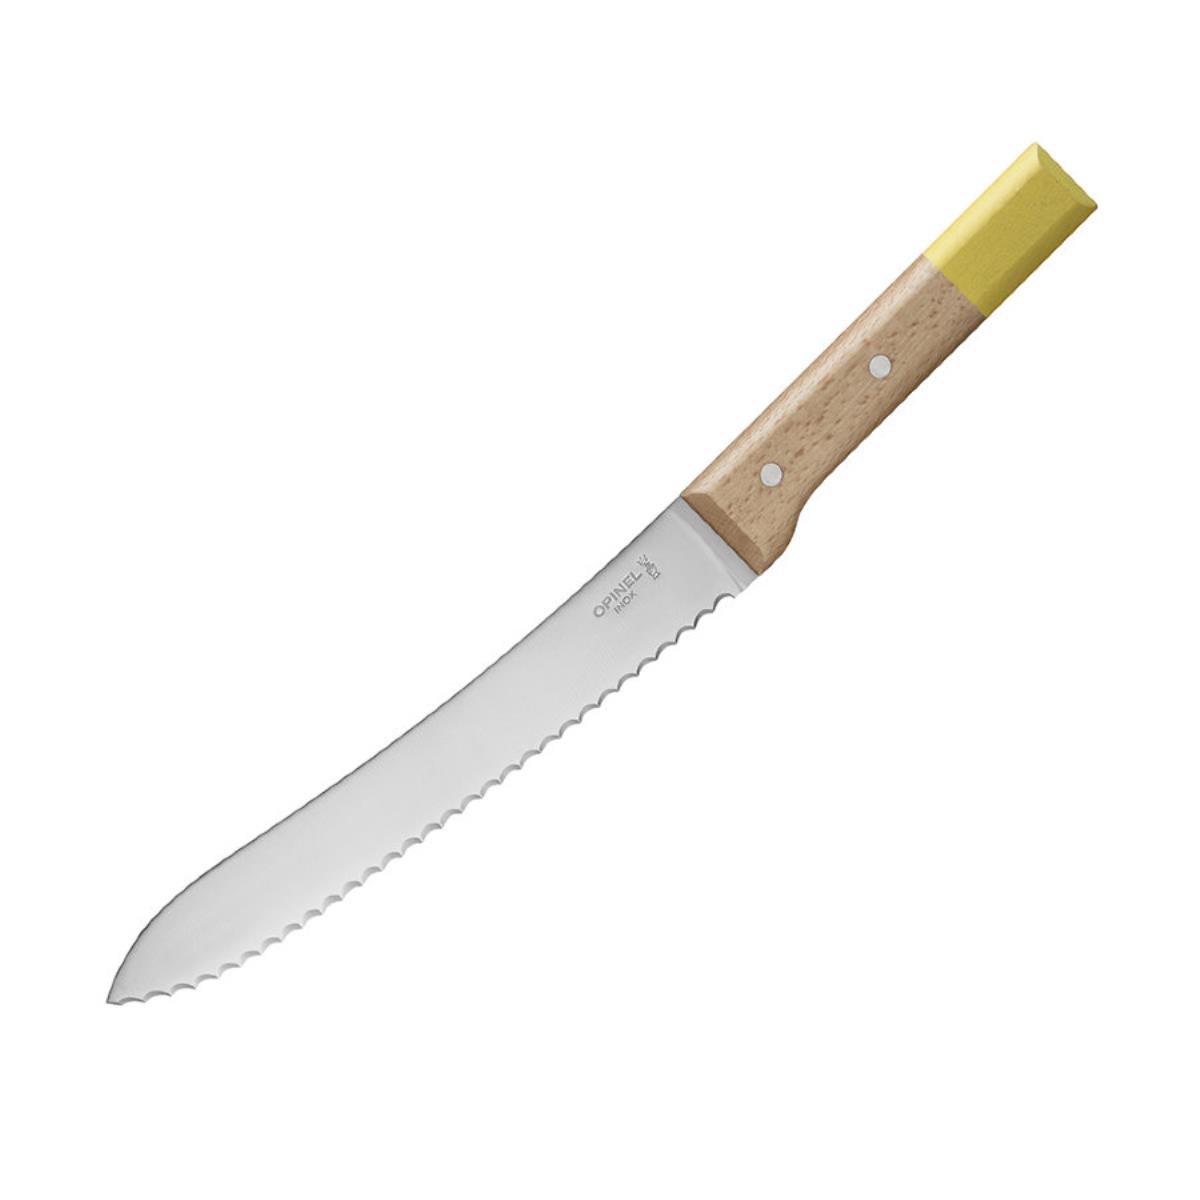 Нож кухонный №116 VRI Parallele для хлеба (нерж. сталь, рукоять бук, длина клинка 21 см) OPINEL нож для хлеба gourmet 4143 200 мм